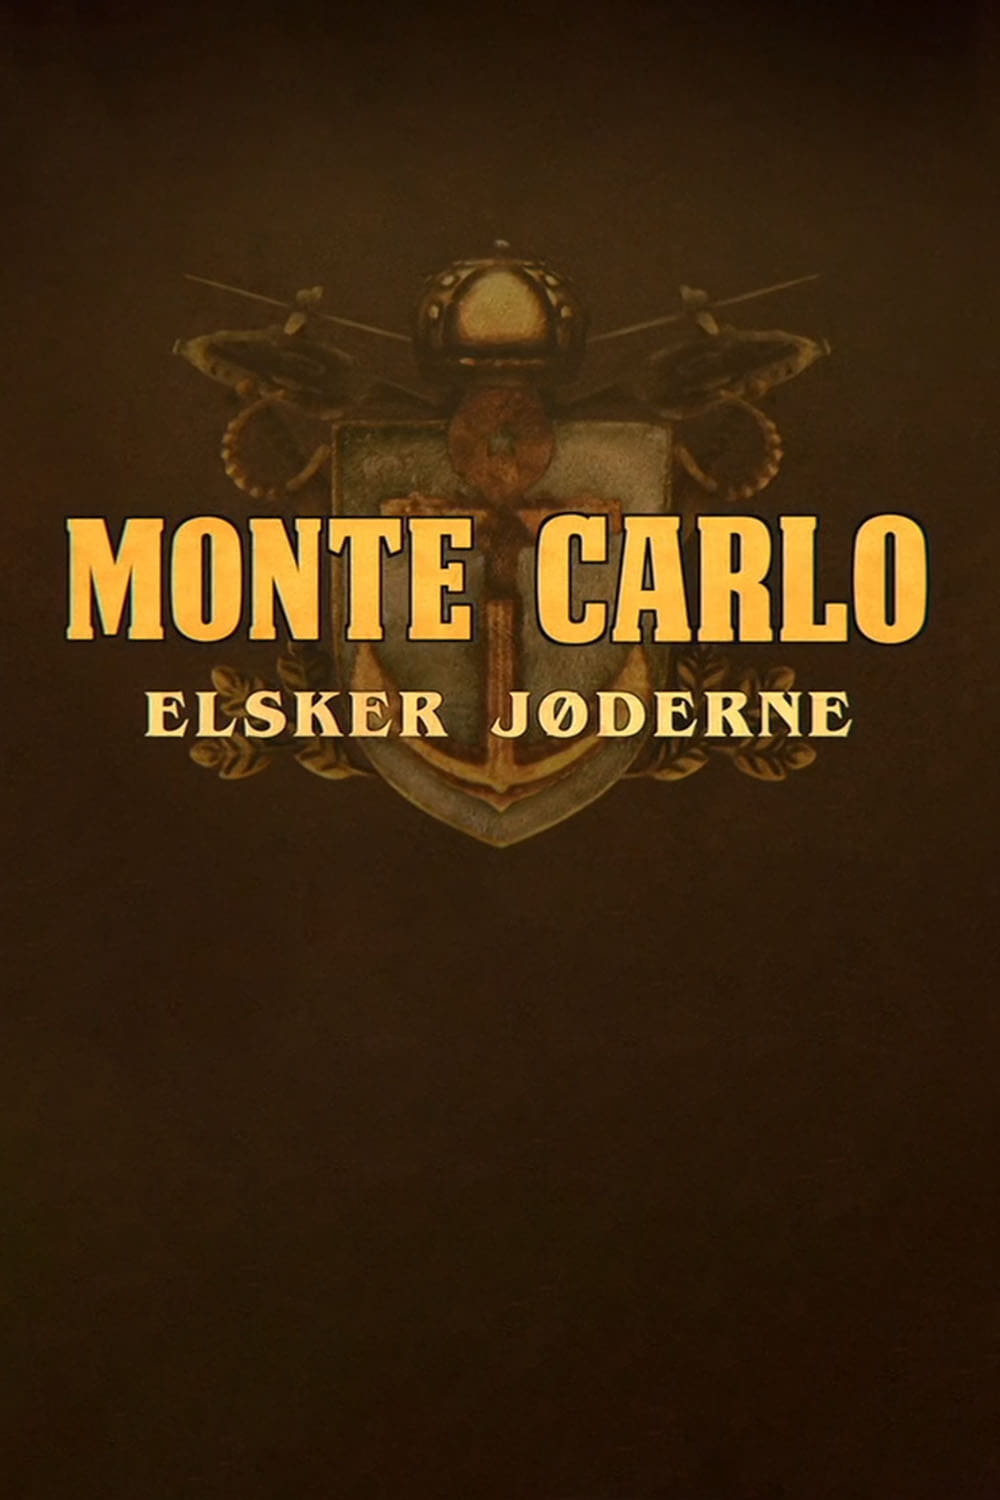 Monte Carlo elsker jøderne